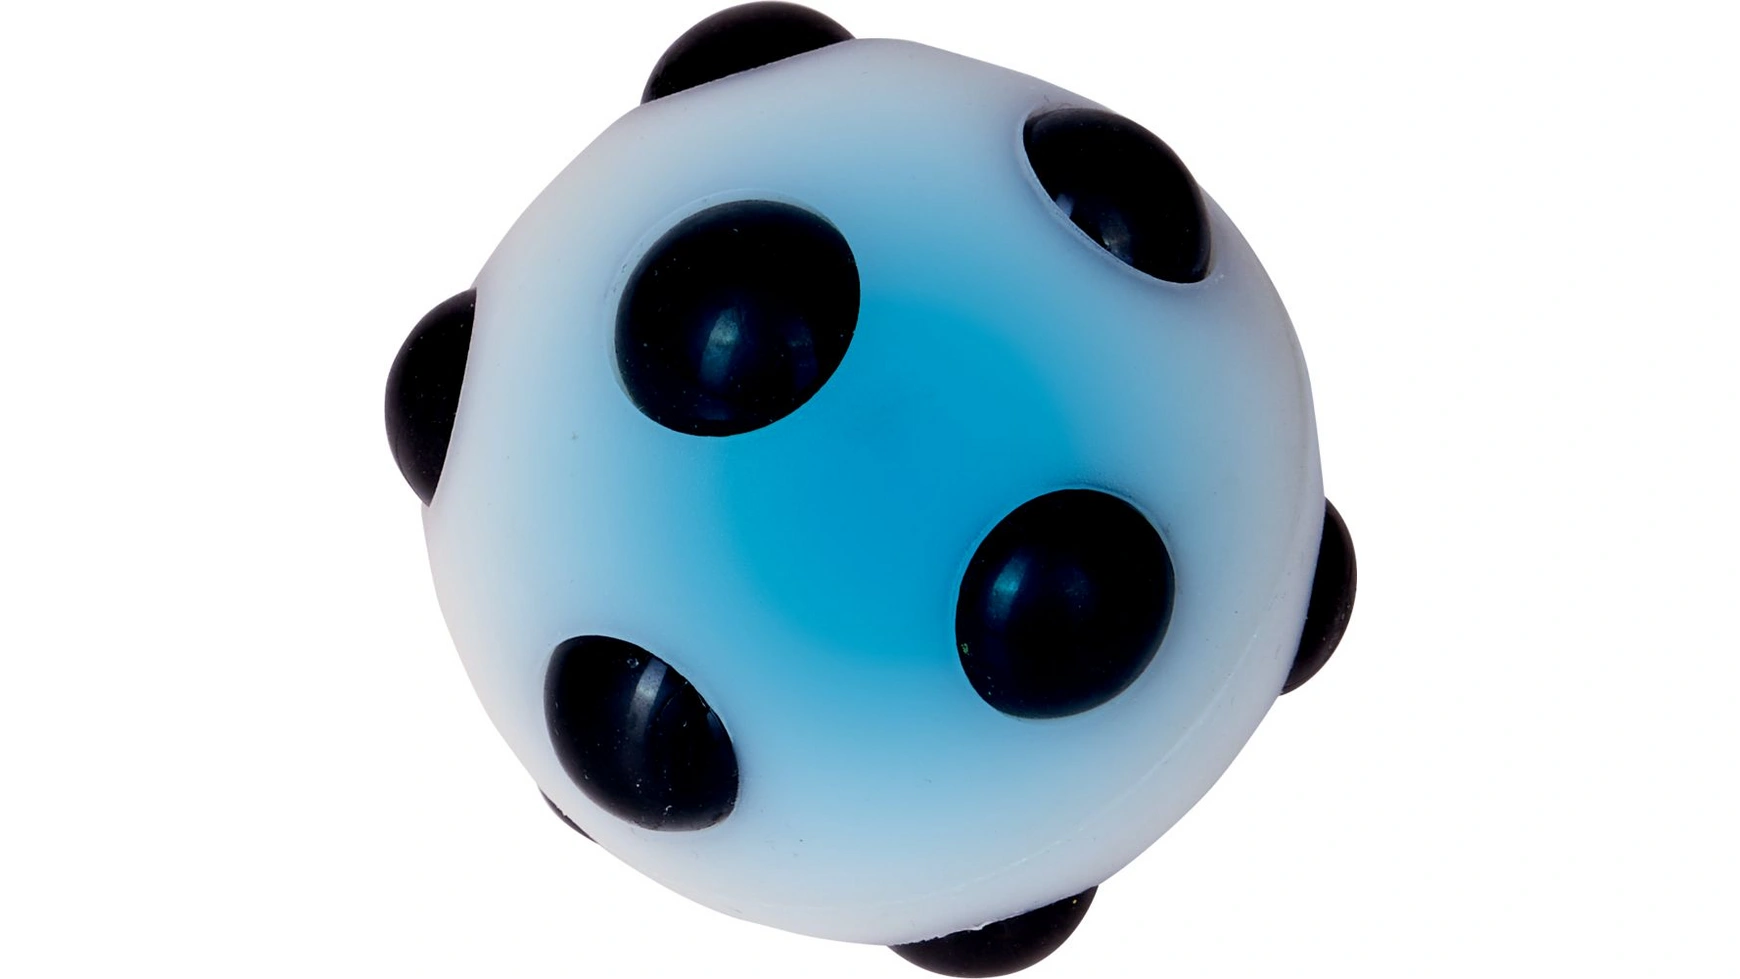 Die Spiegelburg Wild+Cool Светящийся футбольный мяч надувной мяч пвх портативный футбольный мяч для команды развлечения и соревнований по футболу широкие голы футбольные мячи синий мяч 4